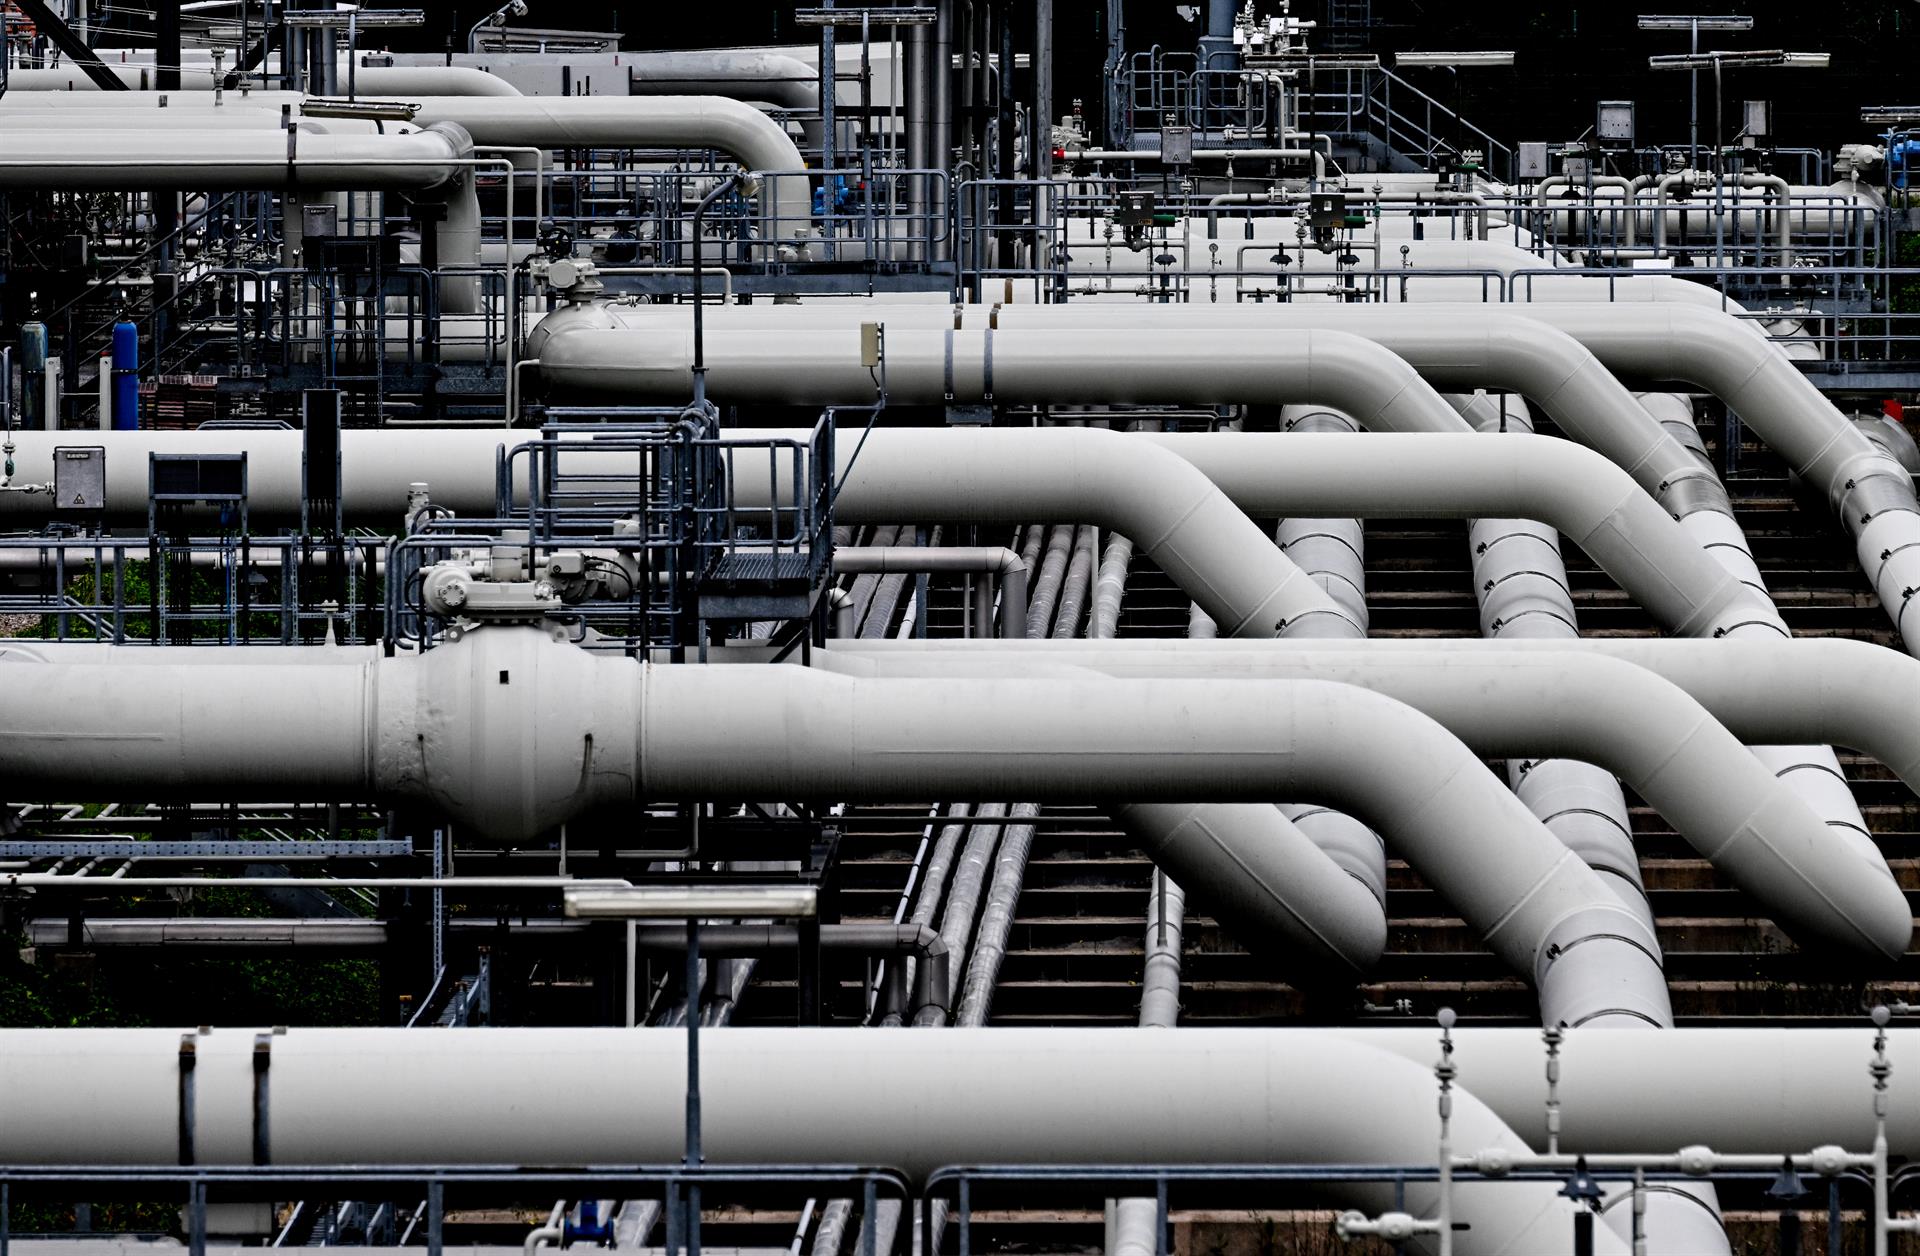 Imagen de archivo de una planta compresora de gas en Alemanjia. EFE/EPA/FILIP SINGER